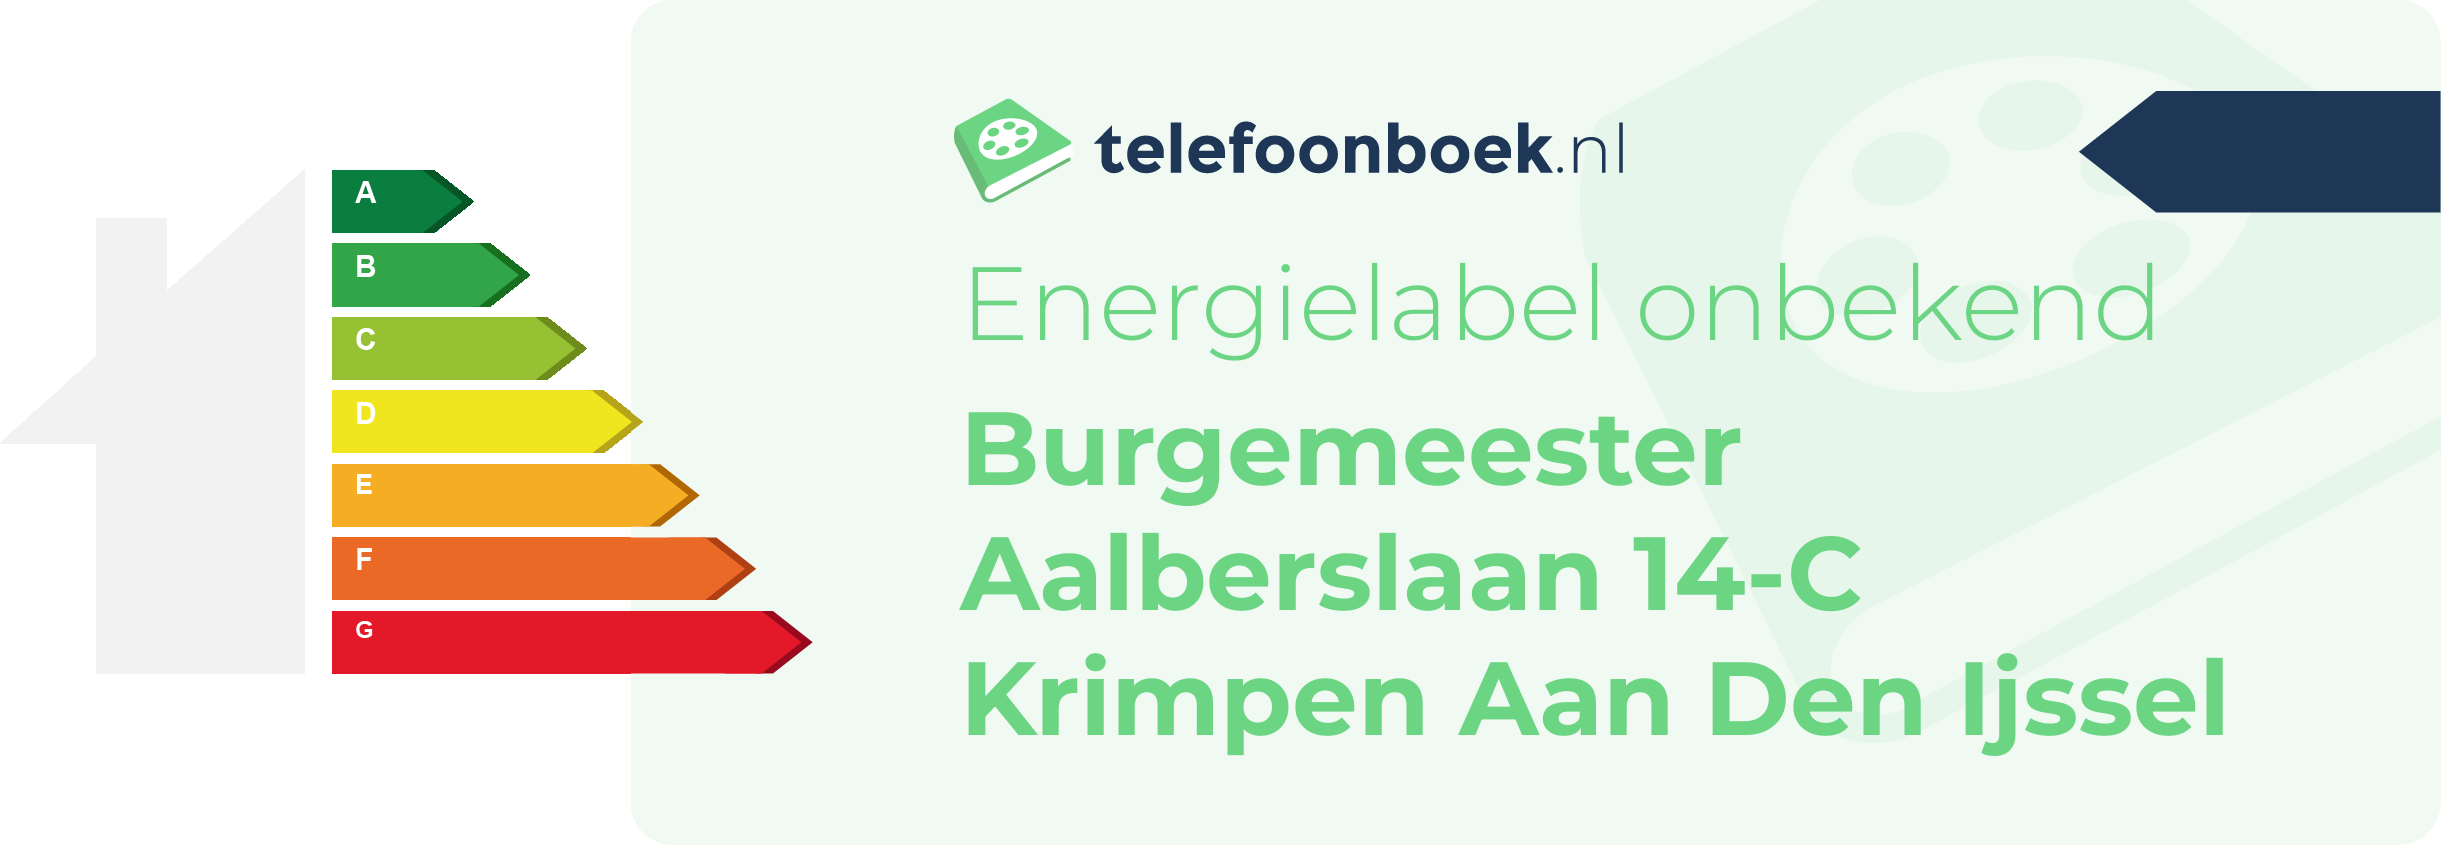 Energielabel Burgemeester Aalberslaan 14-C Krimpen Aan Den Ijssel